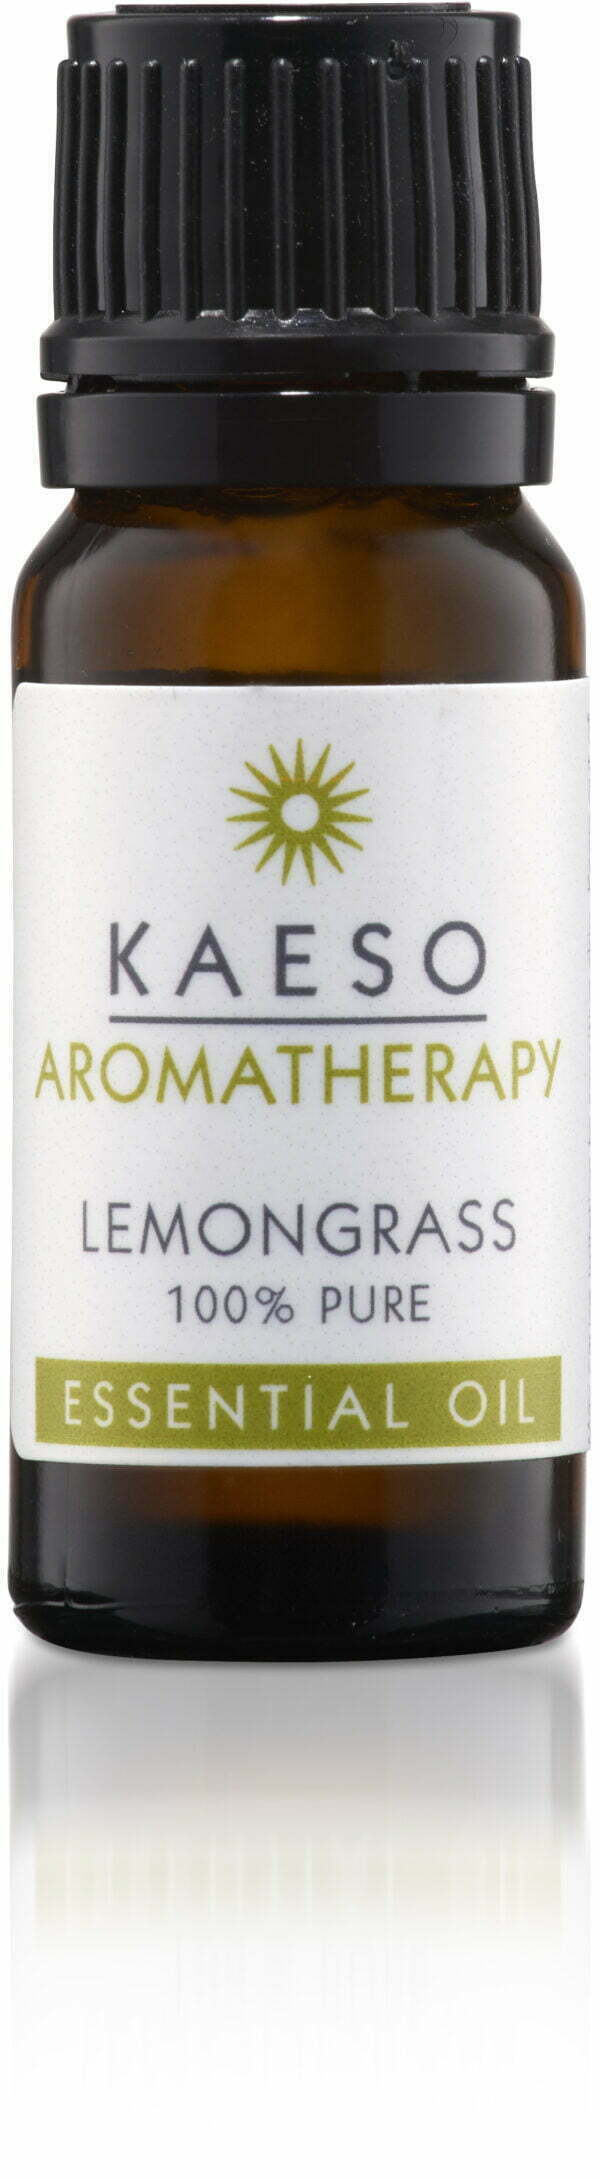 Kaeso Lemongrass Oil